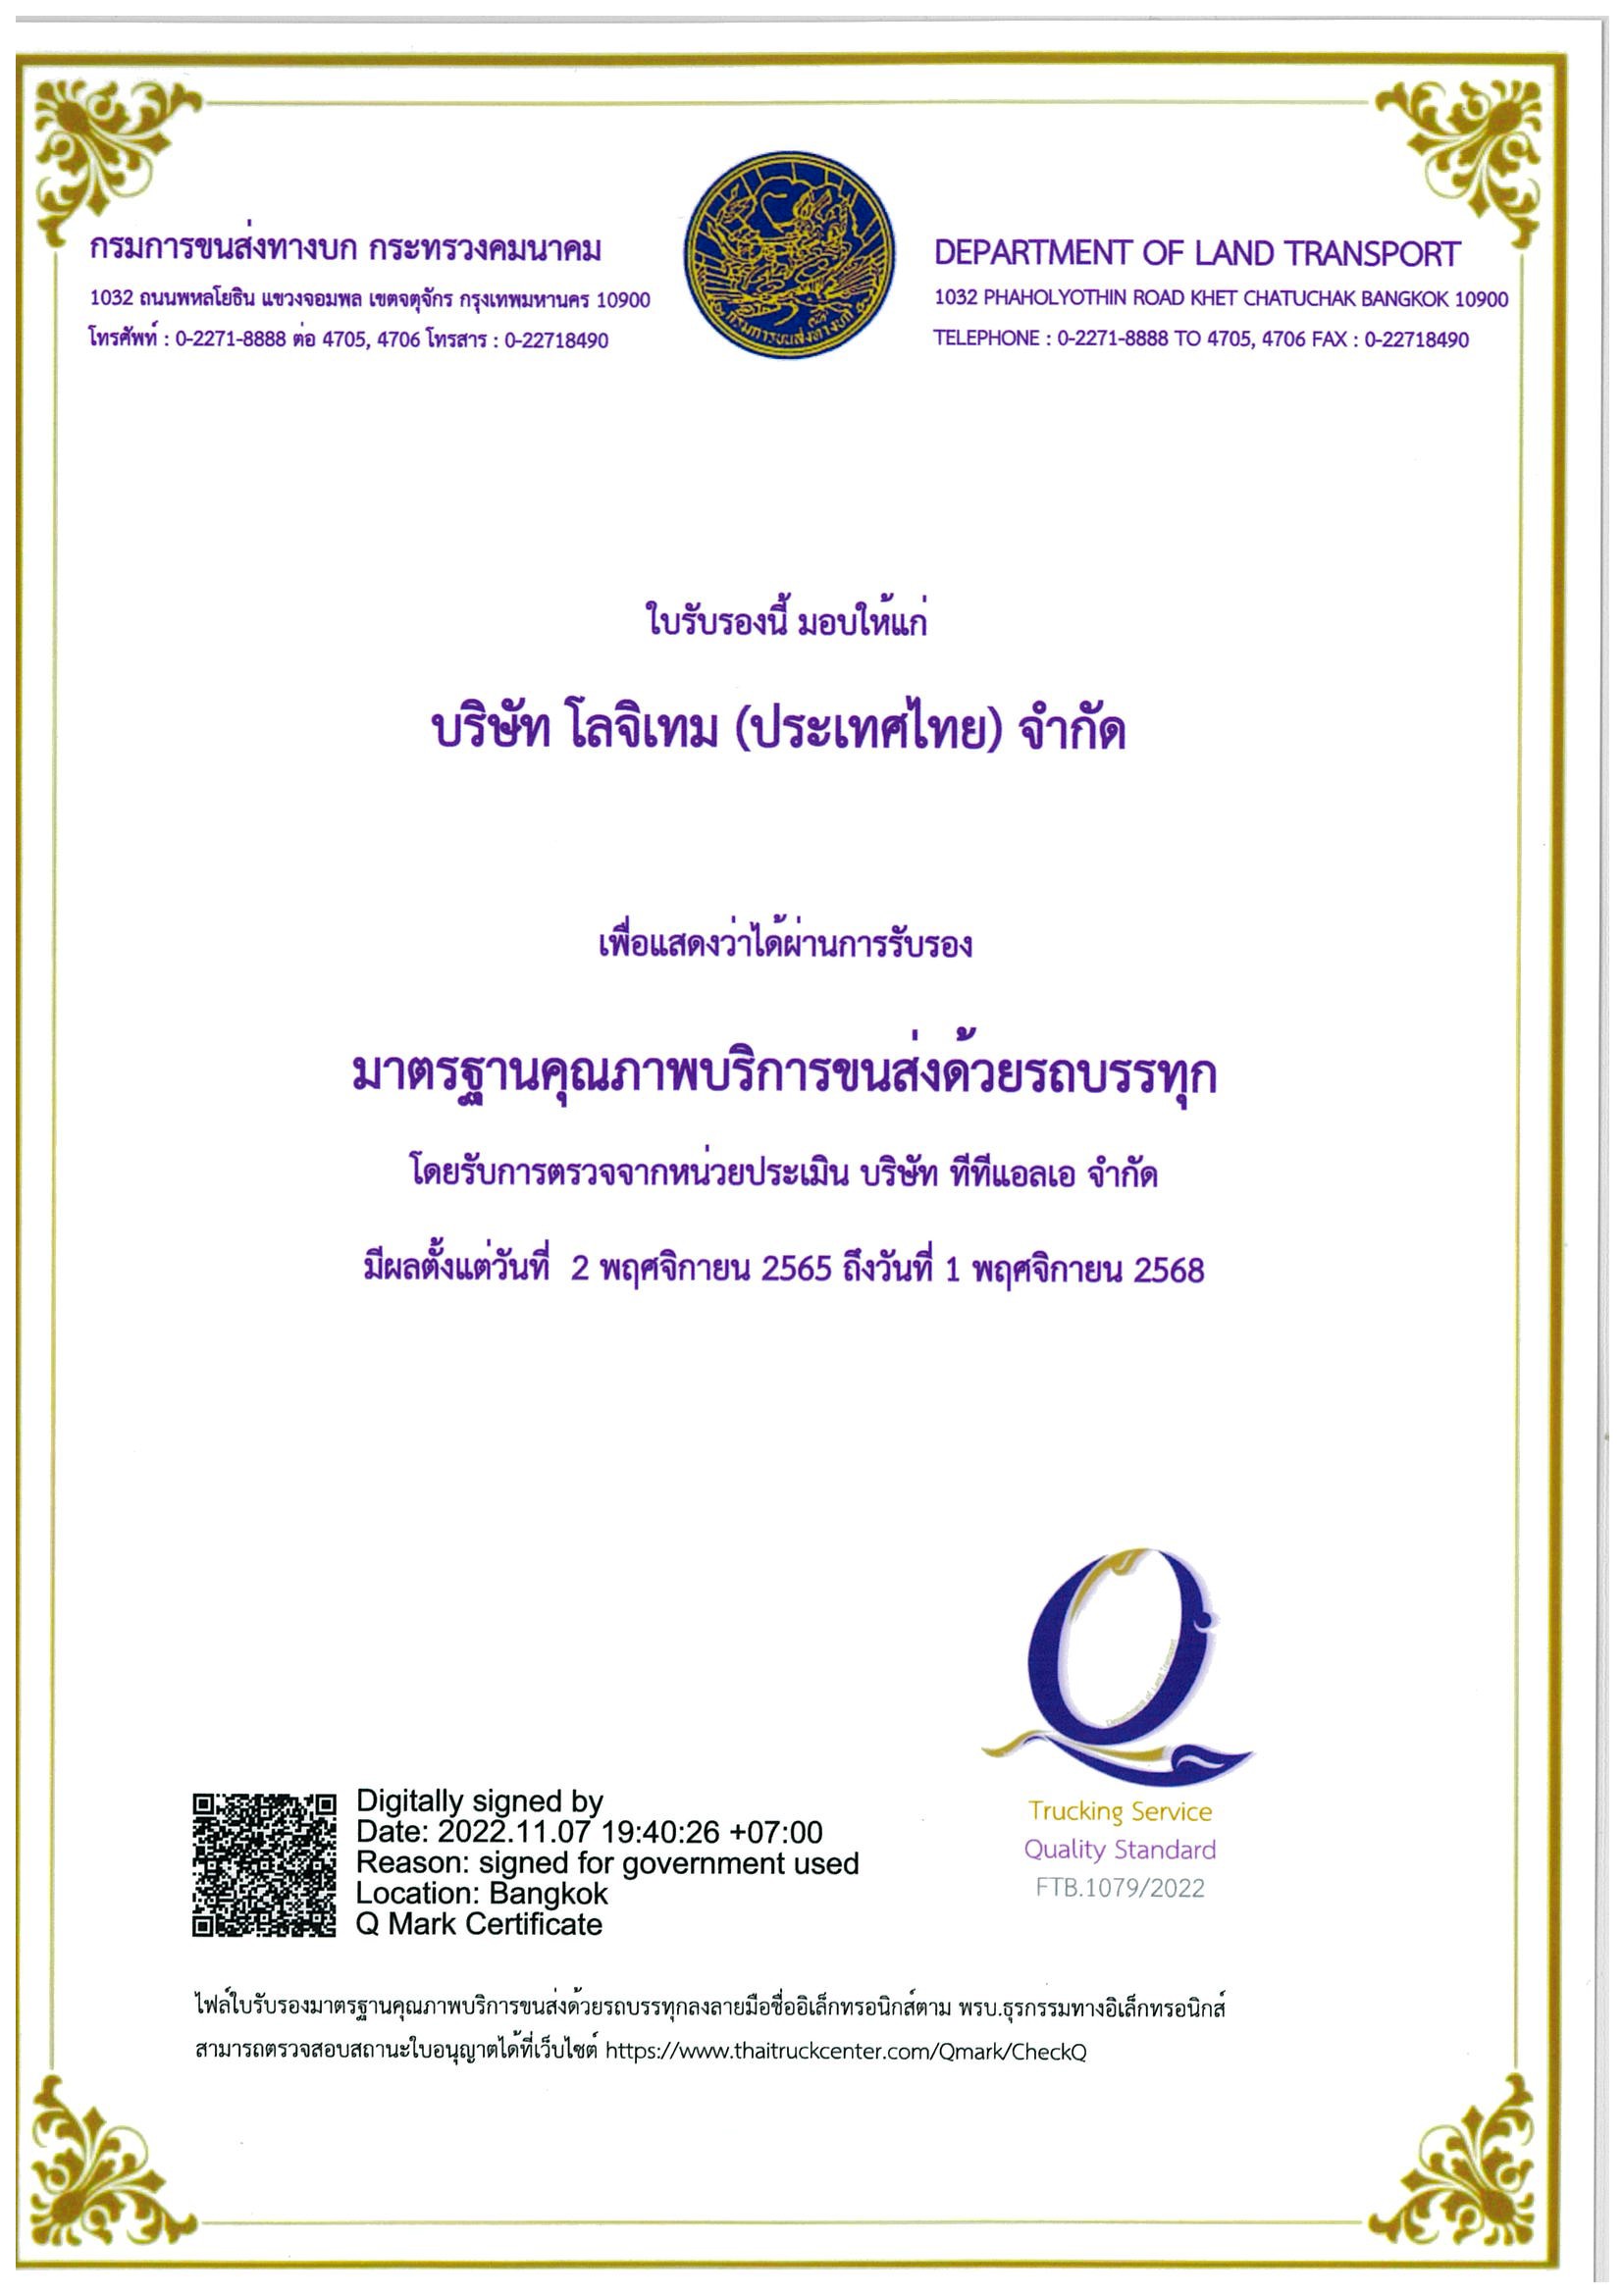 บริษัท โลจิเทม (ประเทศไทย) จำกัด ผ่านการรับรอง “มาตรฐานคุณภาพบริการขนส่งด้วยรถบรรทุก (Q Mark)”